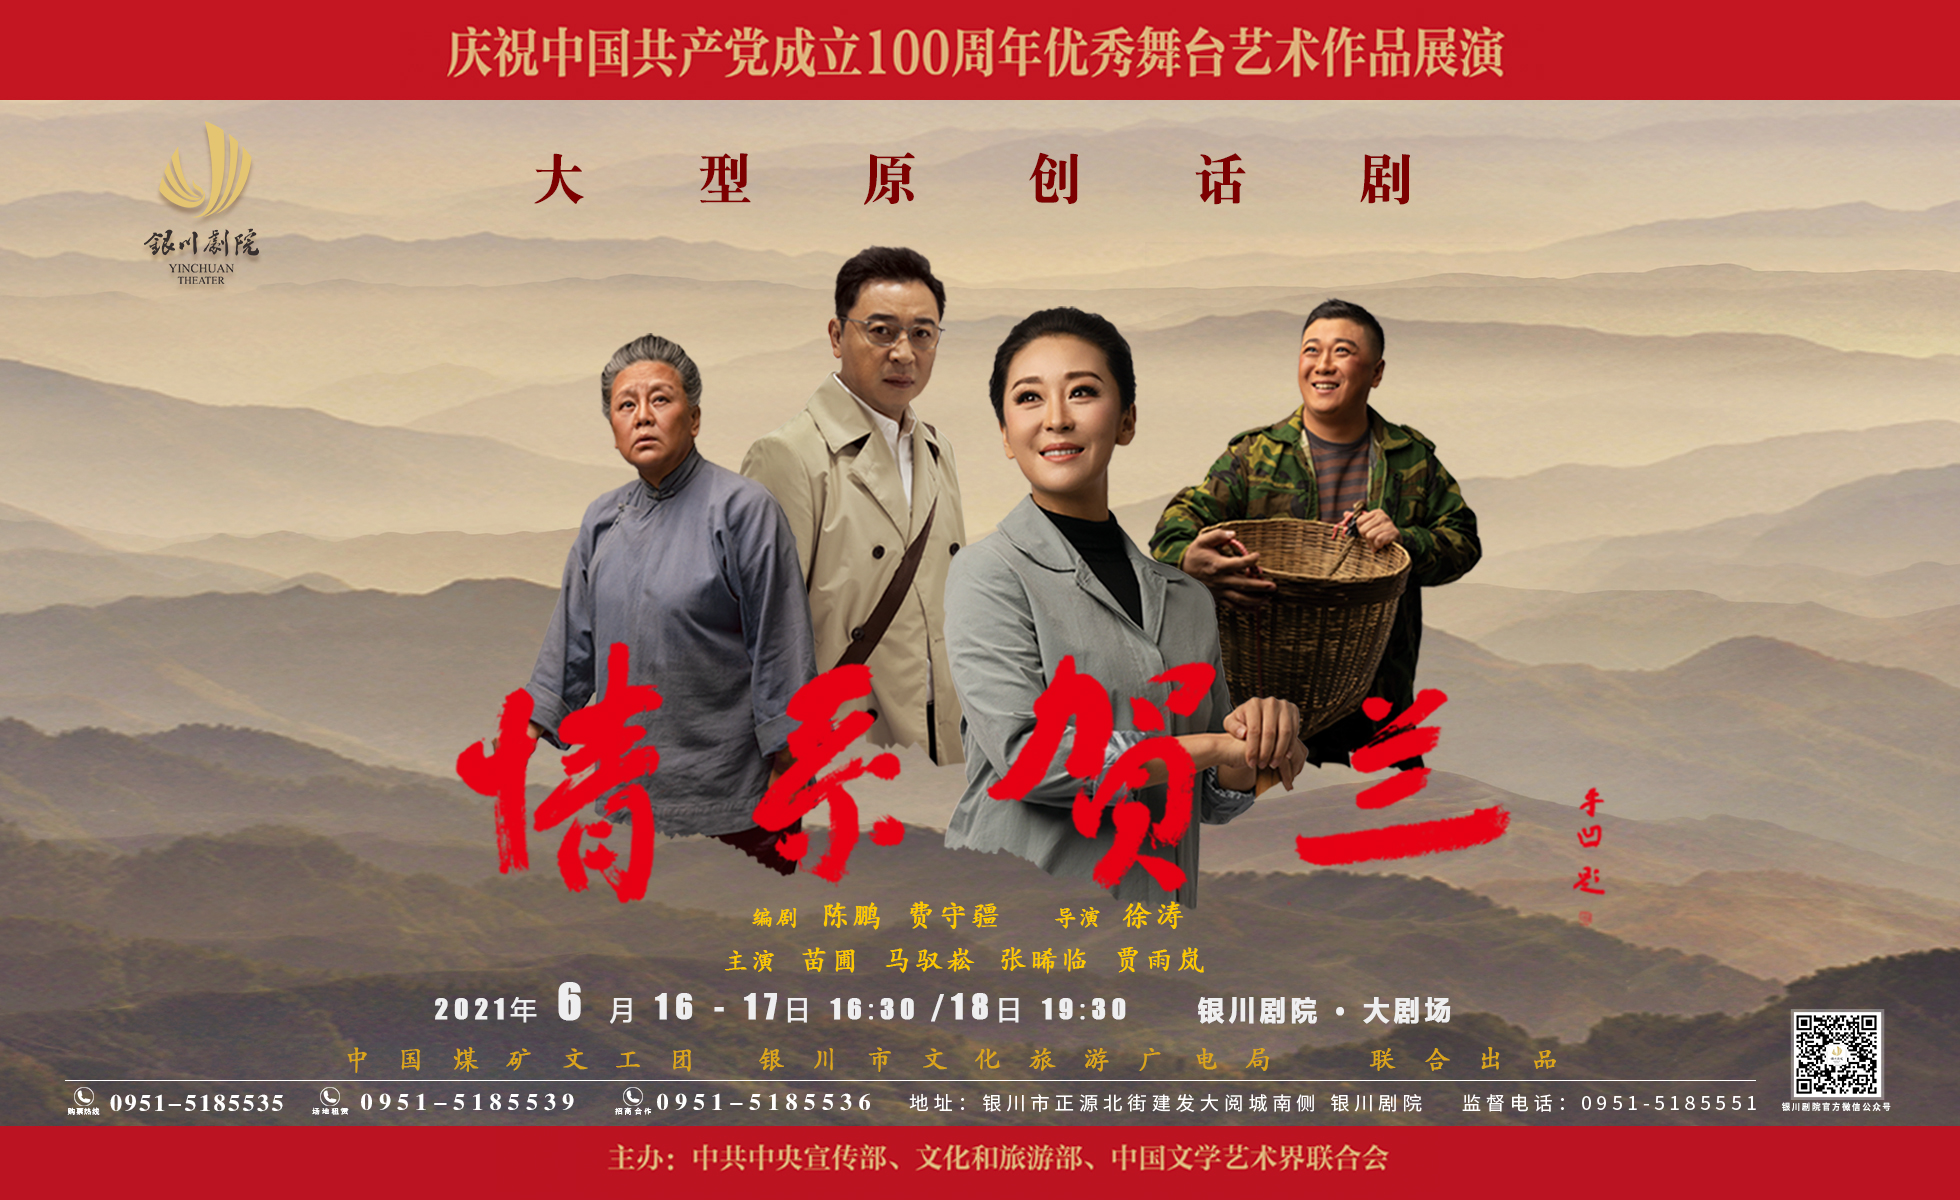 6月16日-20日,话剧《情系贺兰》将在银川剧院上演!